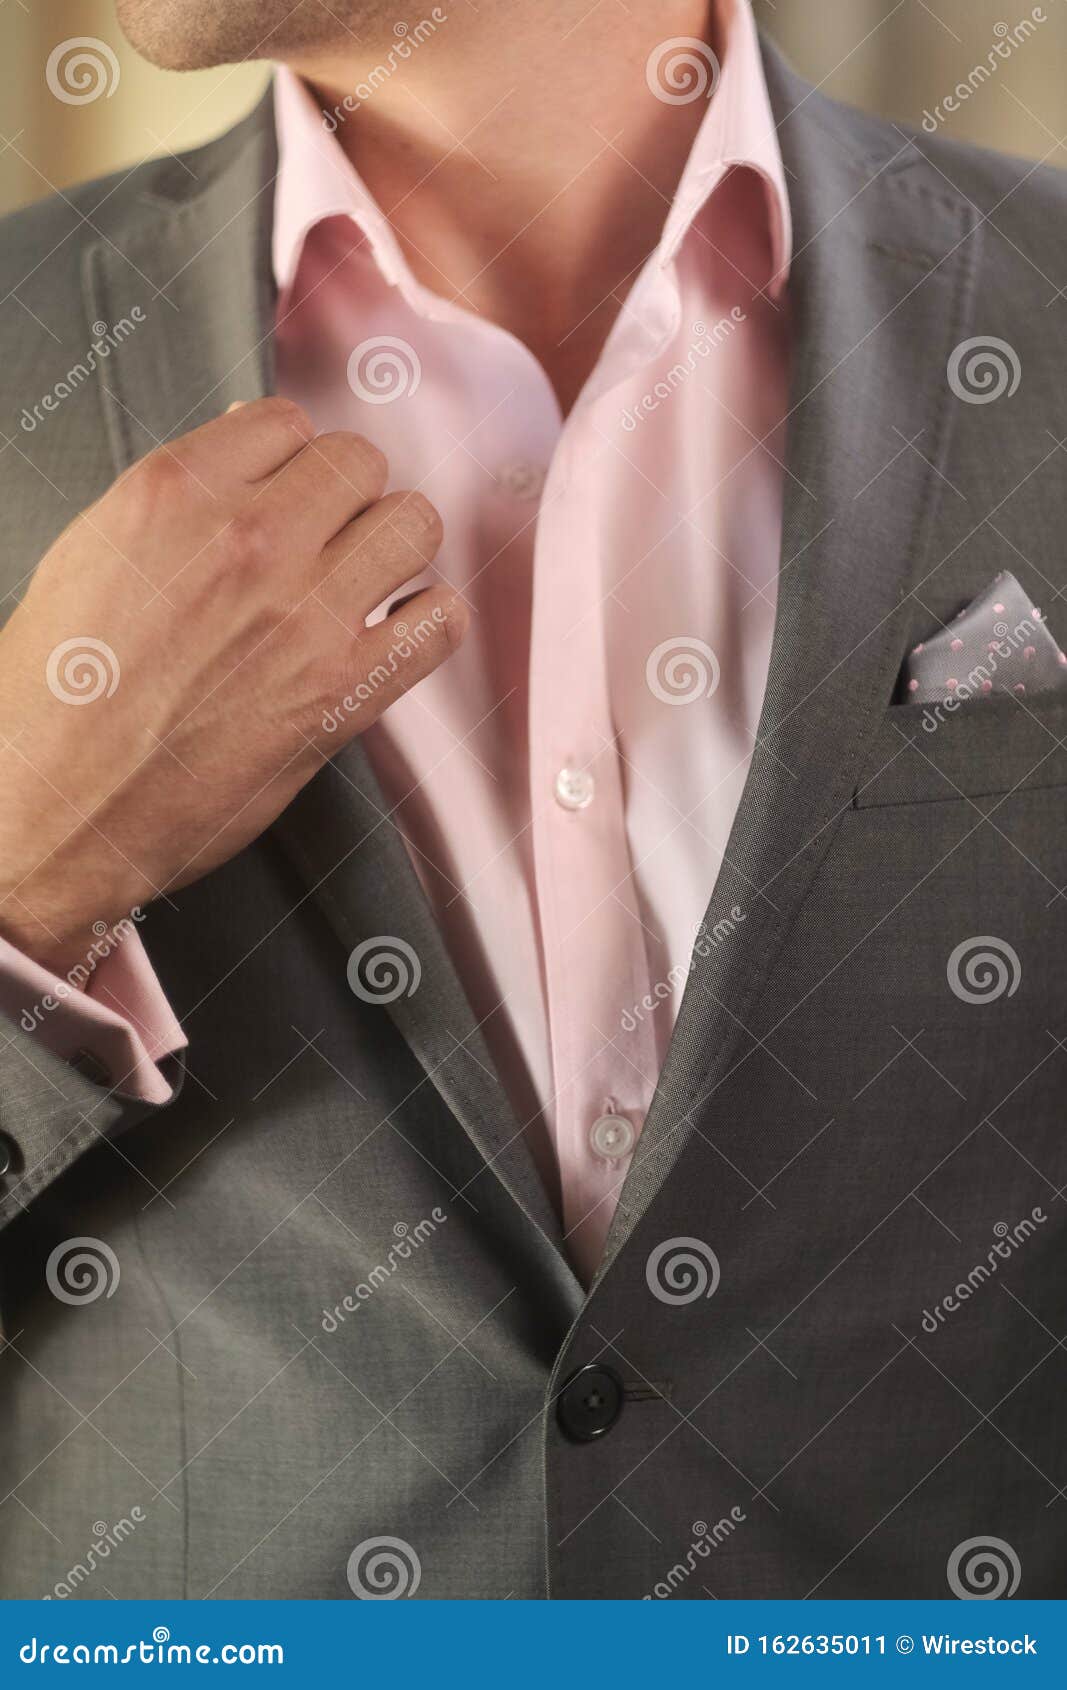 obturador Península pereza Imagen Vertical De Un Novio Con Una Camisa Rosa Y Un Traje Gris,  Preparándose Para La Boda Imagen de archivo - Imagen de boutonniere,  chaqueta: 162635011